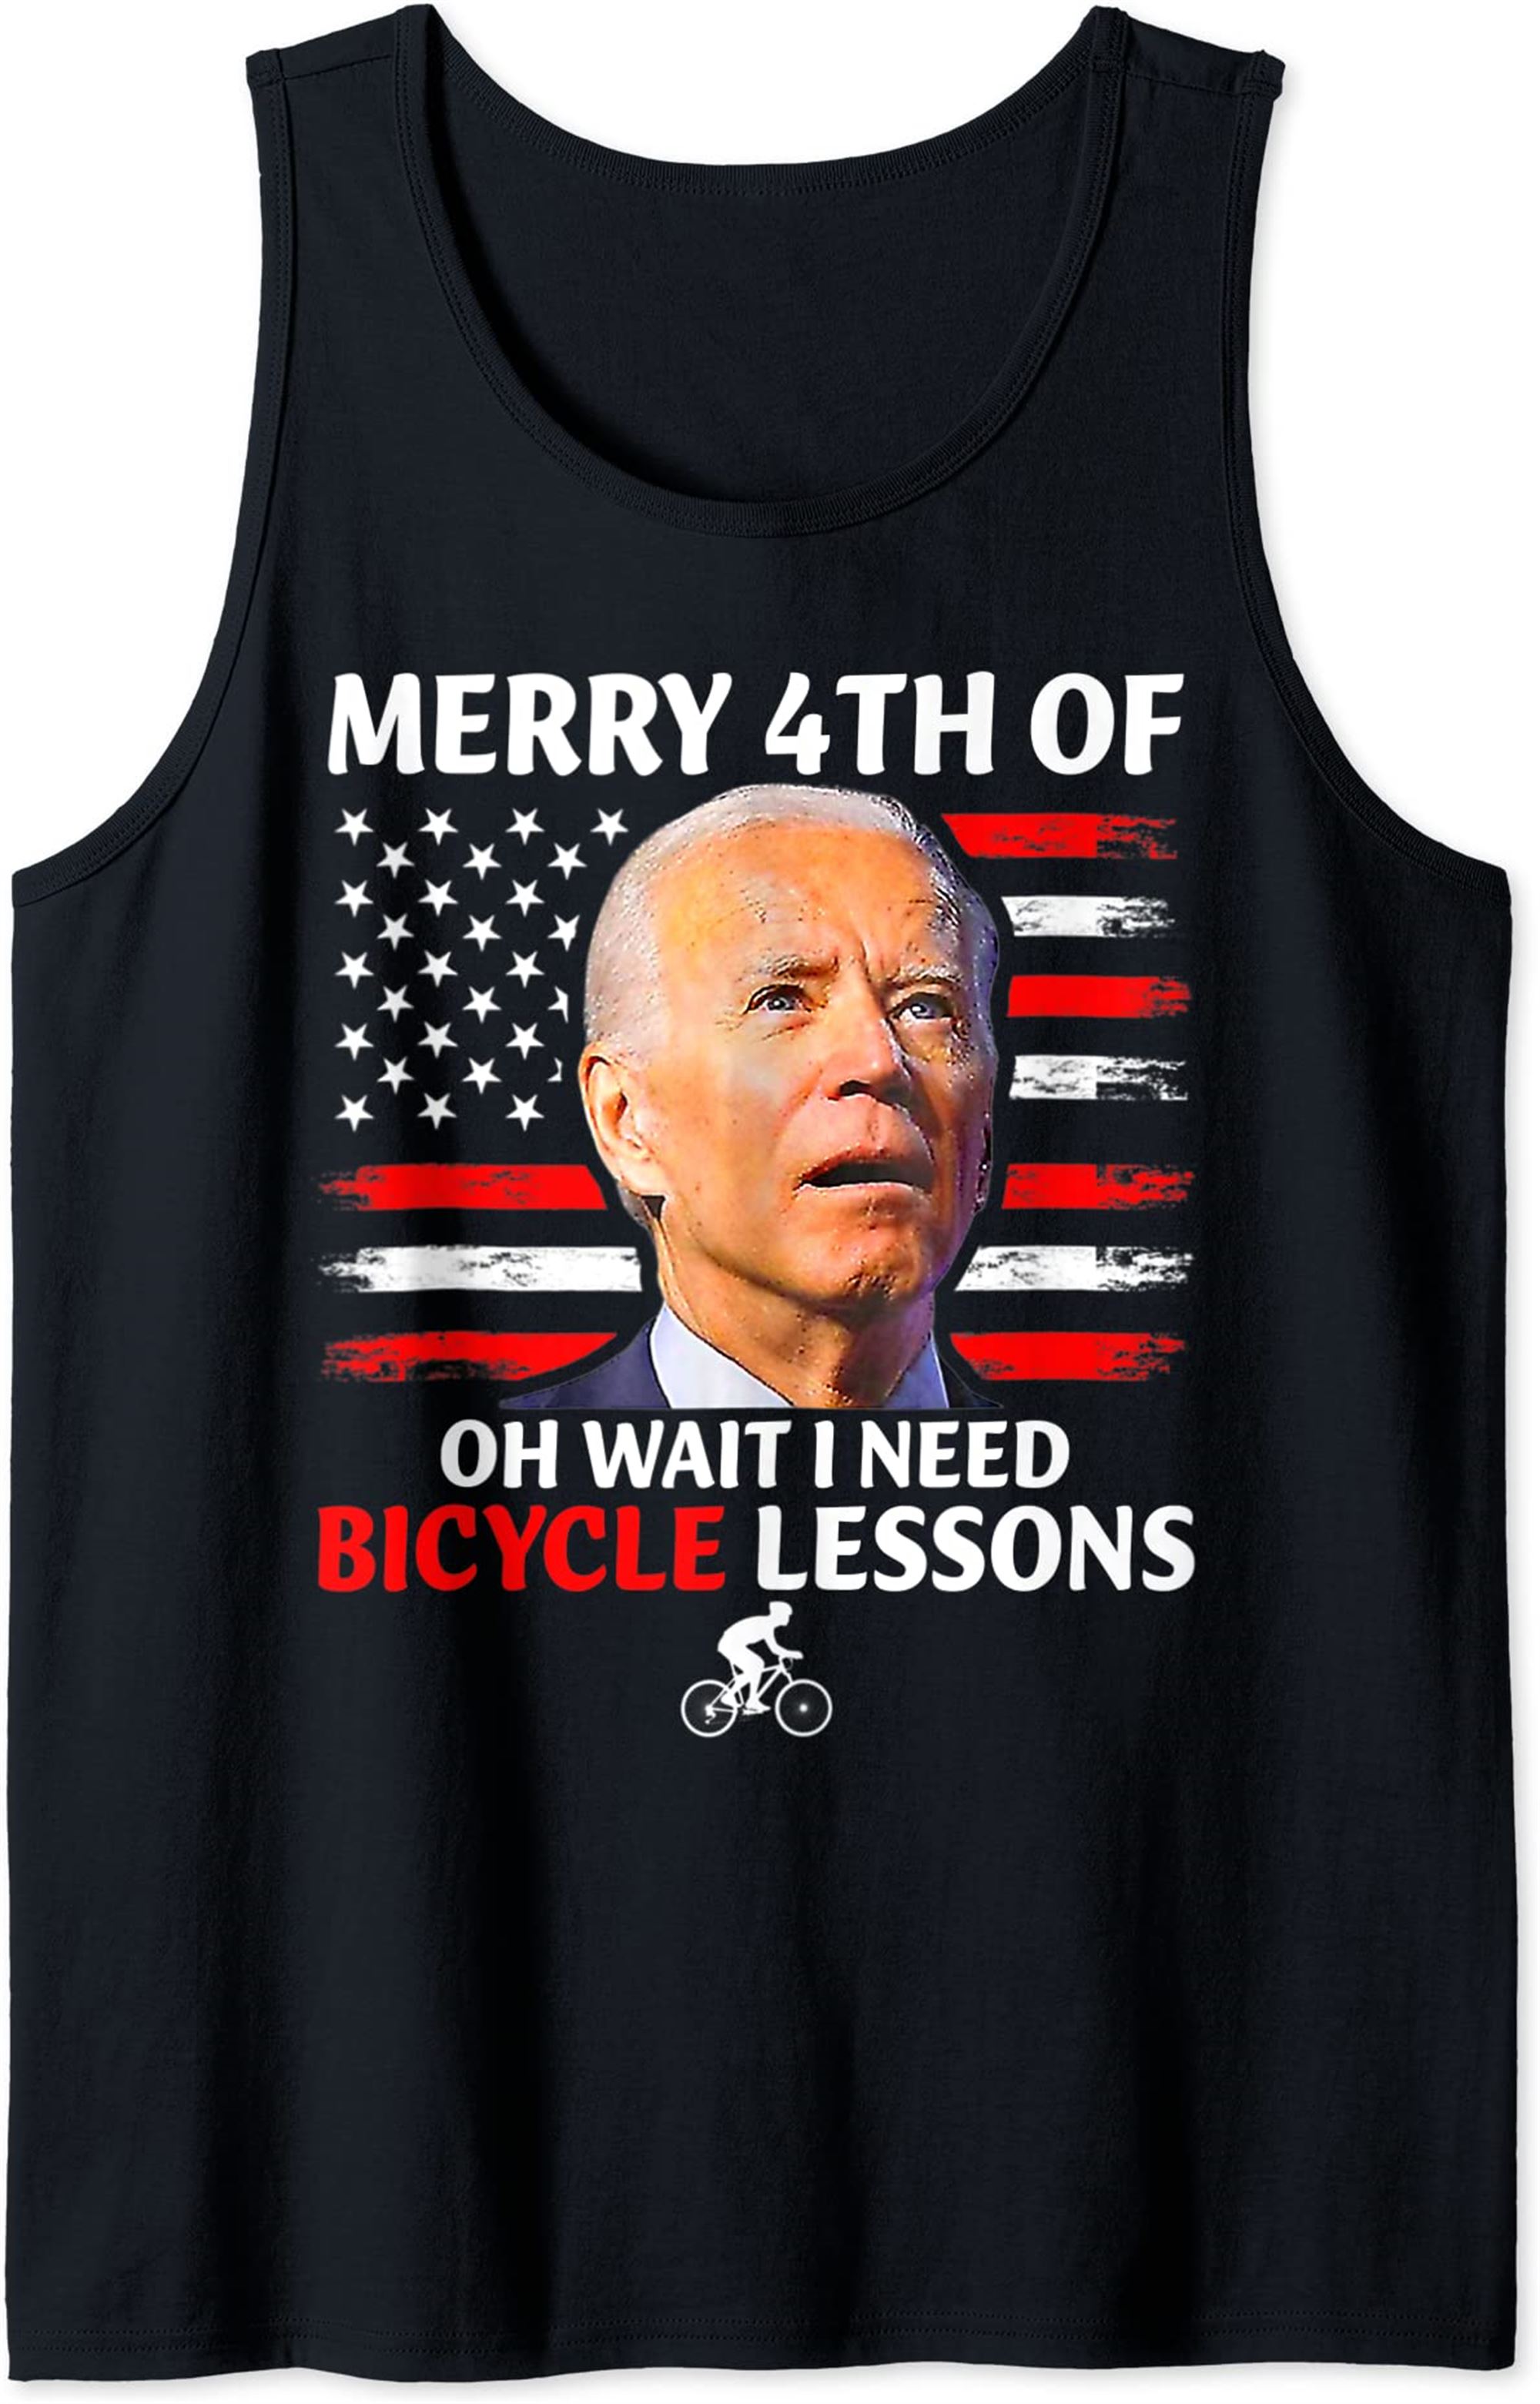 Joe Biden Falls Off His Bike Its The Republicans Fault Tank Top Full Size Up To 5xl